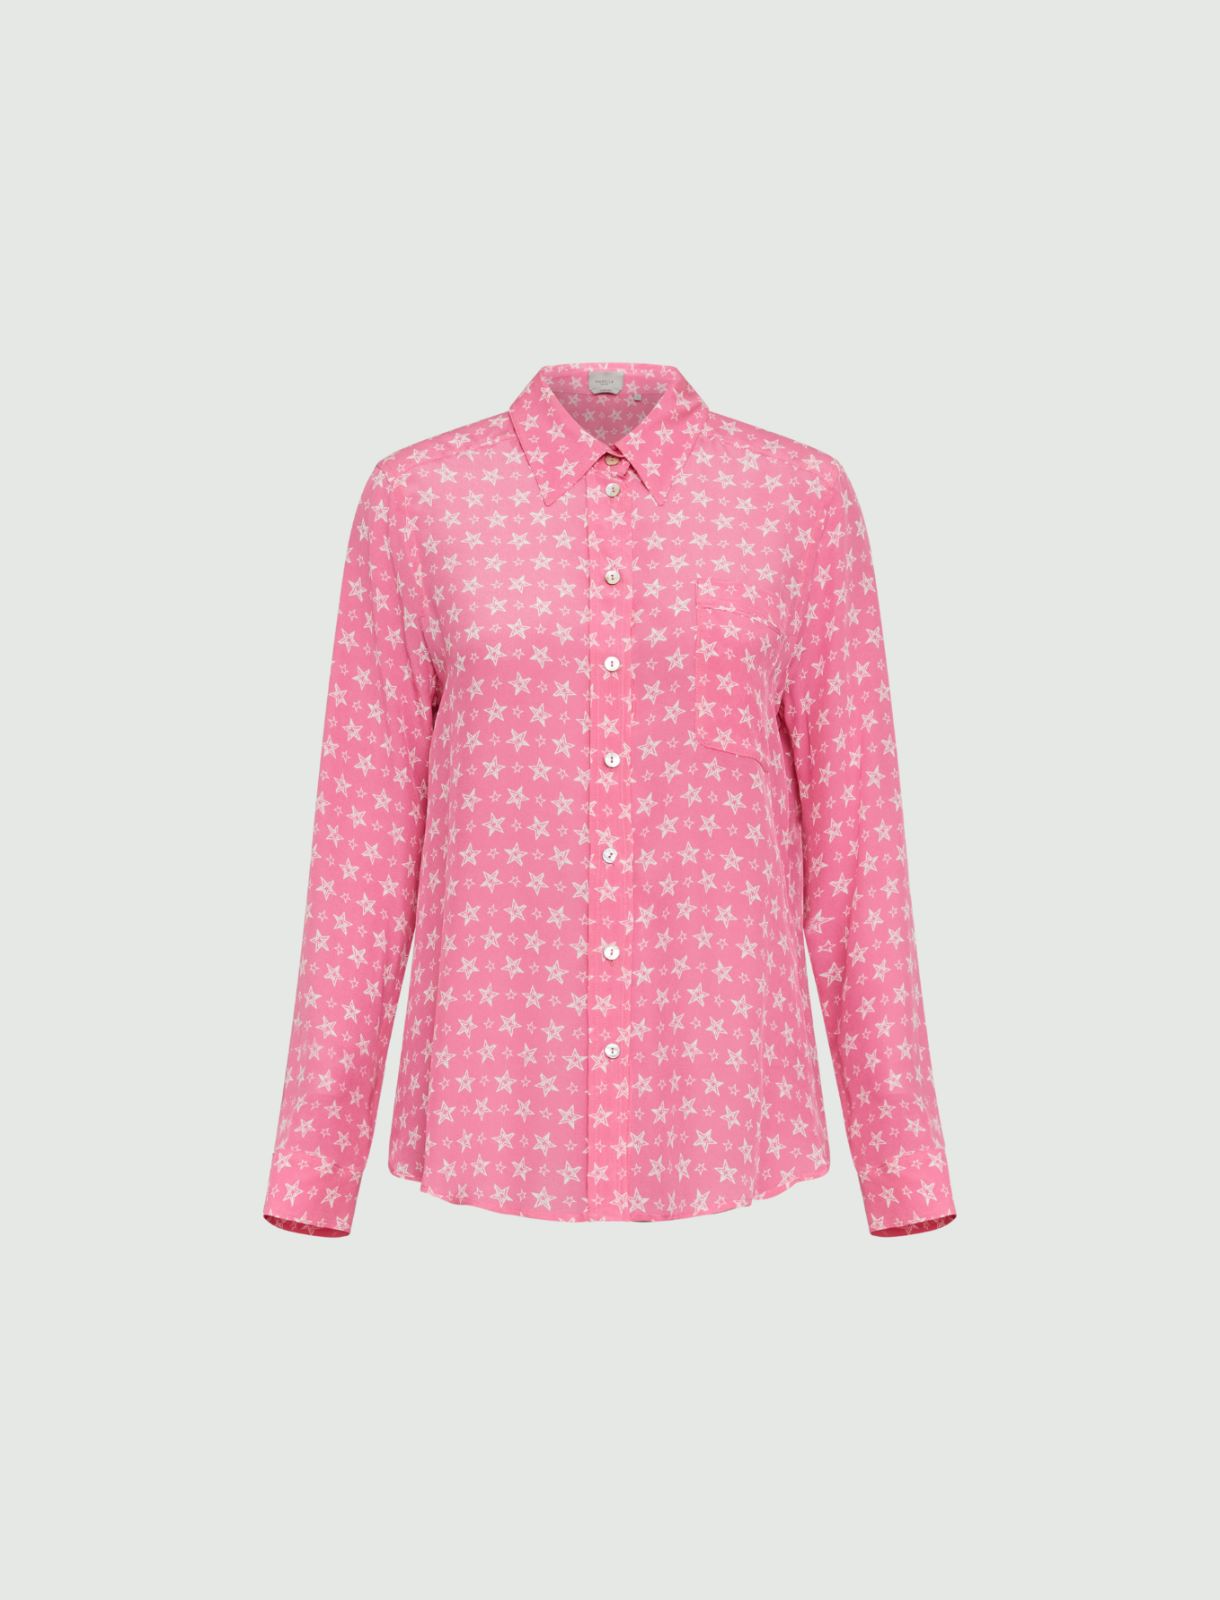 Patterned shirt - Shocking pink - Marella - 5